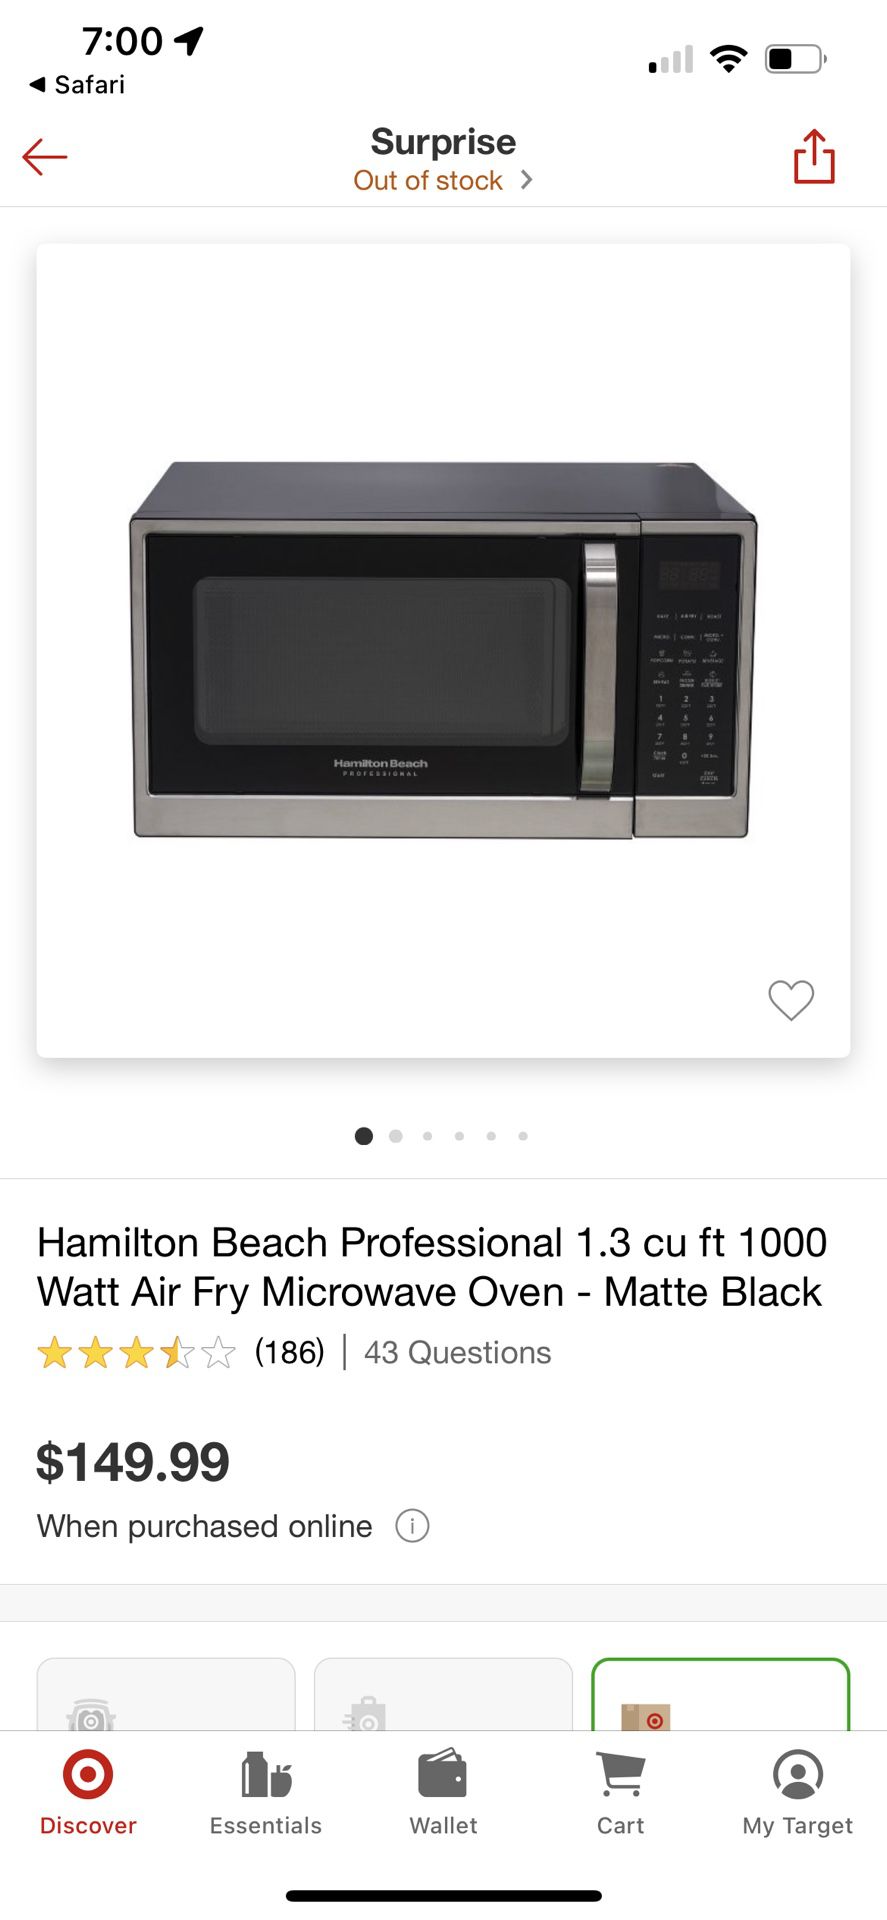 Like New BLACK DECKER Digital Microwave Oven $75 for Sale in Phoenix, AZ -  OfferUp